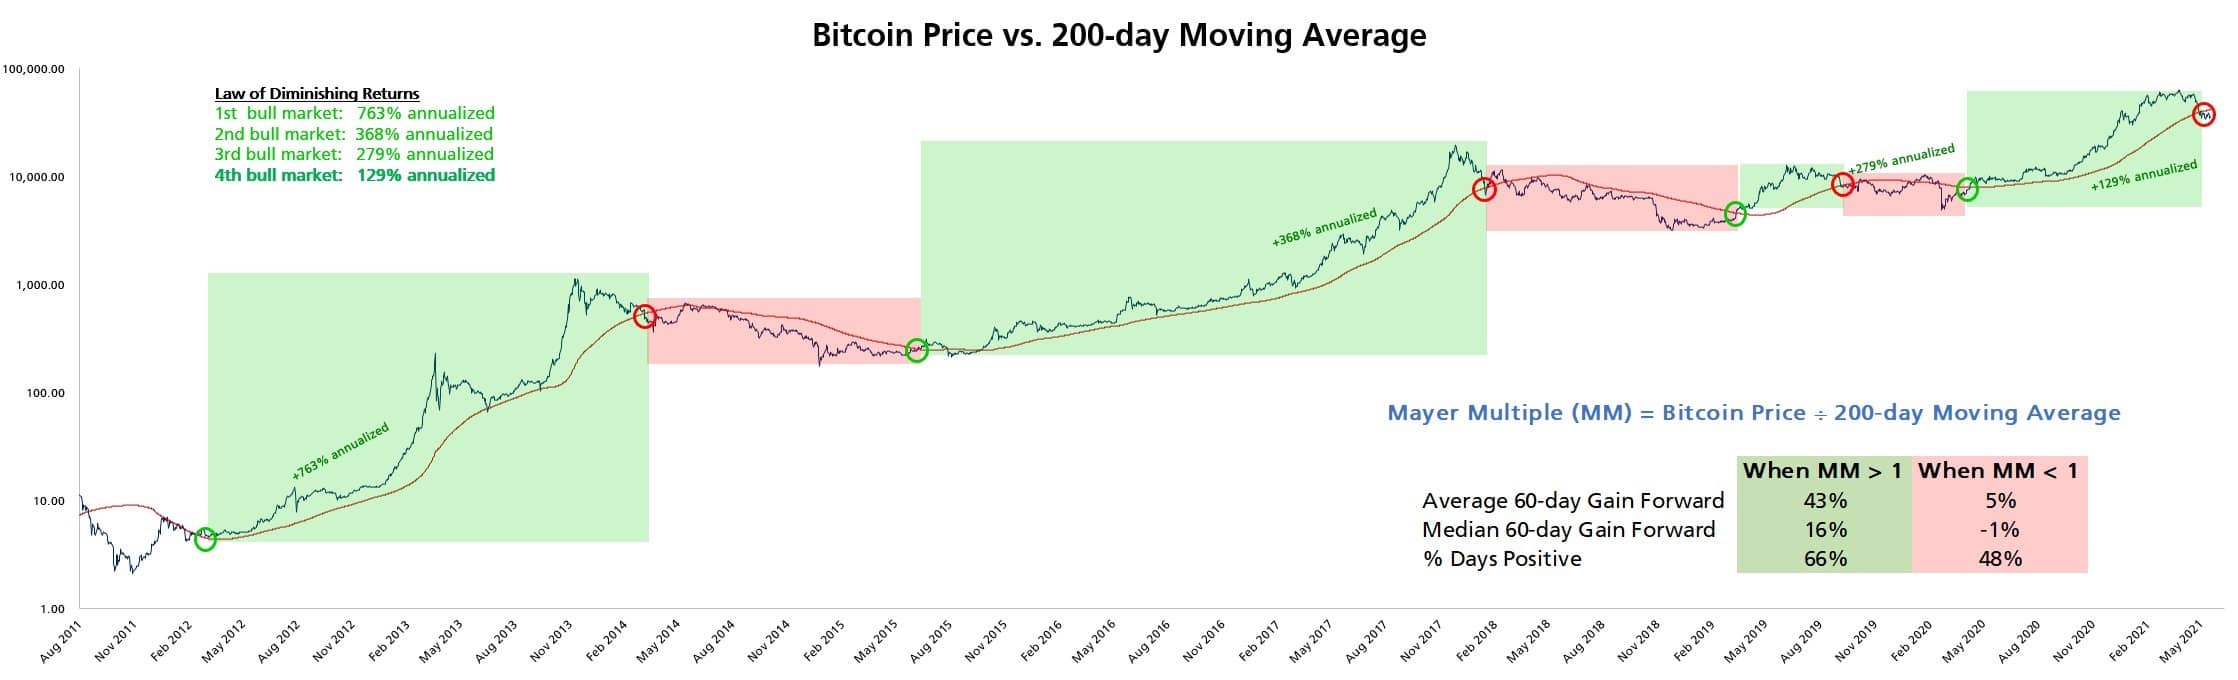 بررسی عملکرد قیمت بیت کوین نسبت به میانگین متحرک 200 روزه